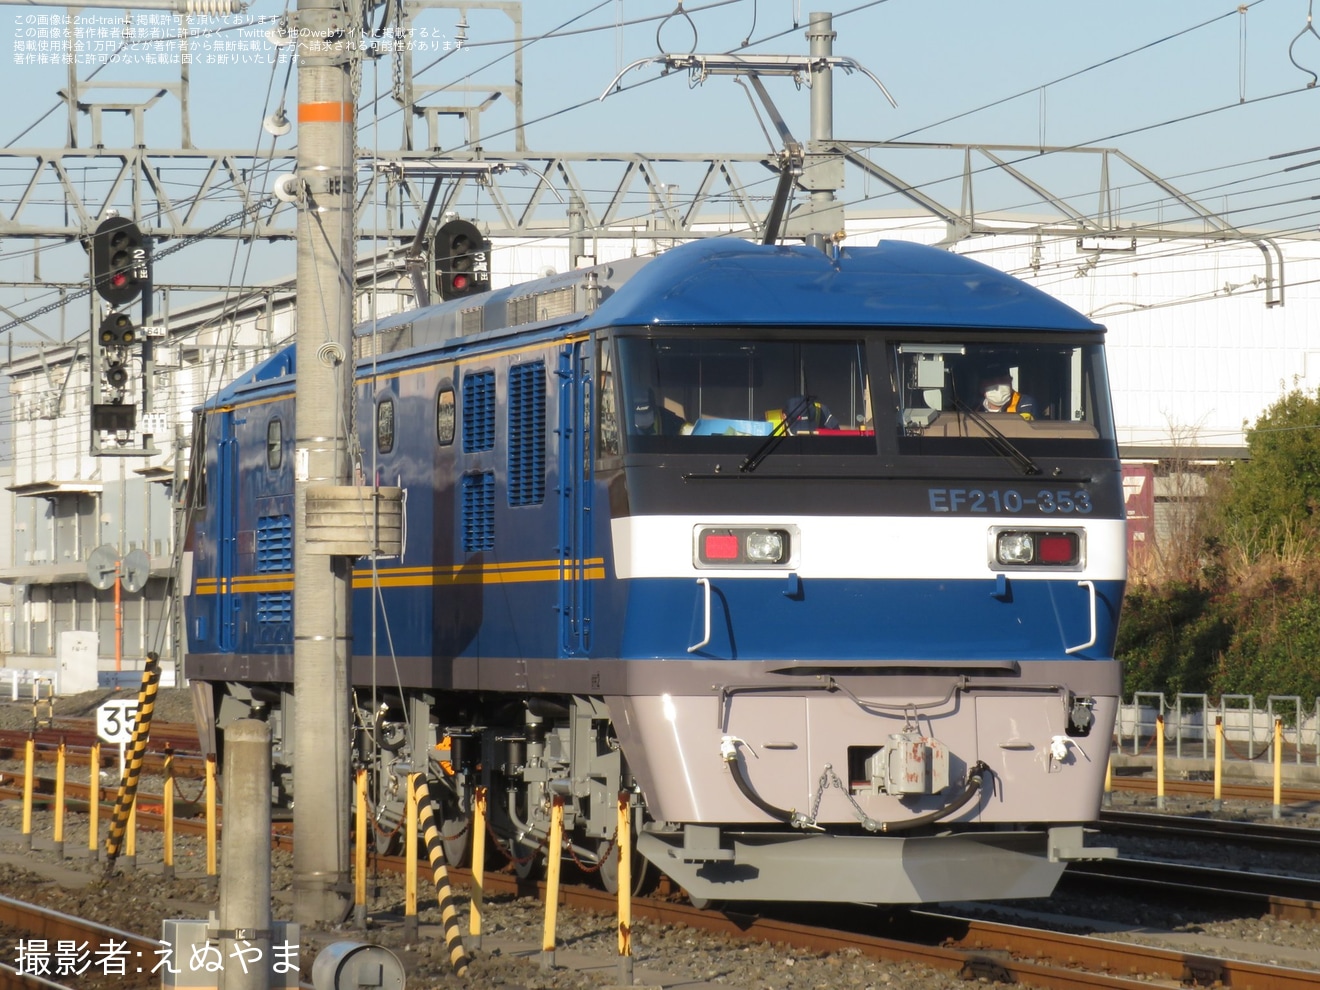 【JR貨】EF210-353川崎車両出場試運転の拡大写真